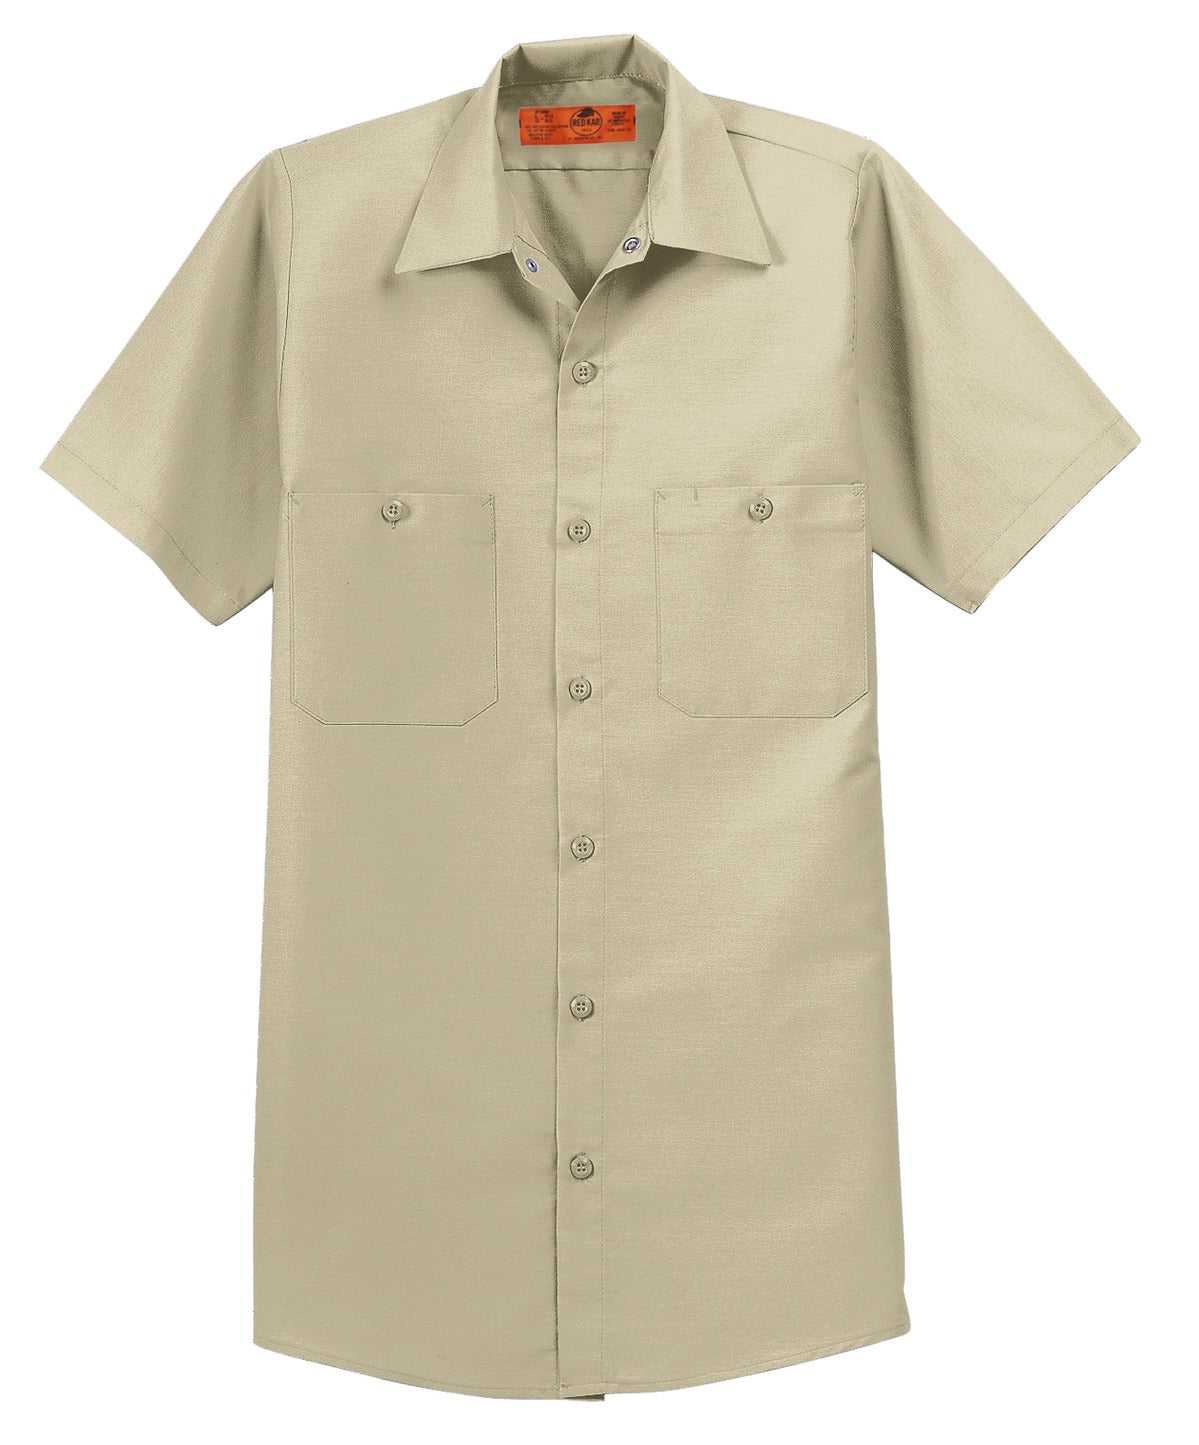 Red Kap SP24 Short Sleeve Industrial Work Shirt - Light Tan - HIT a Double - 3